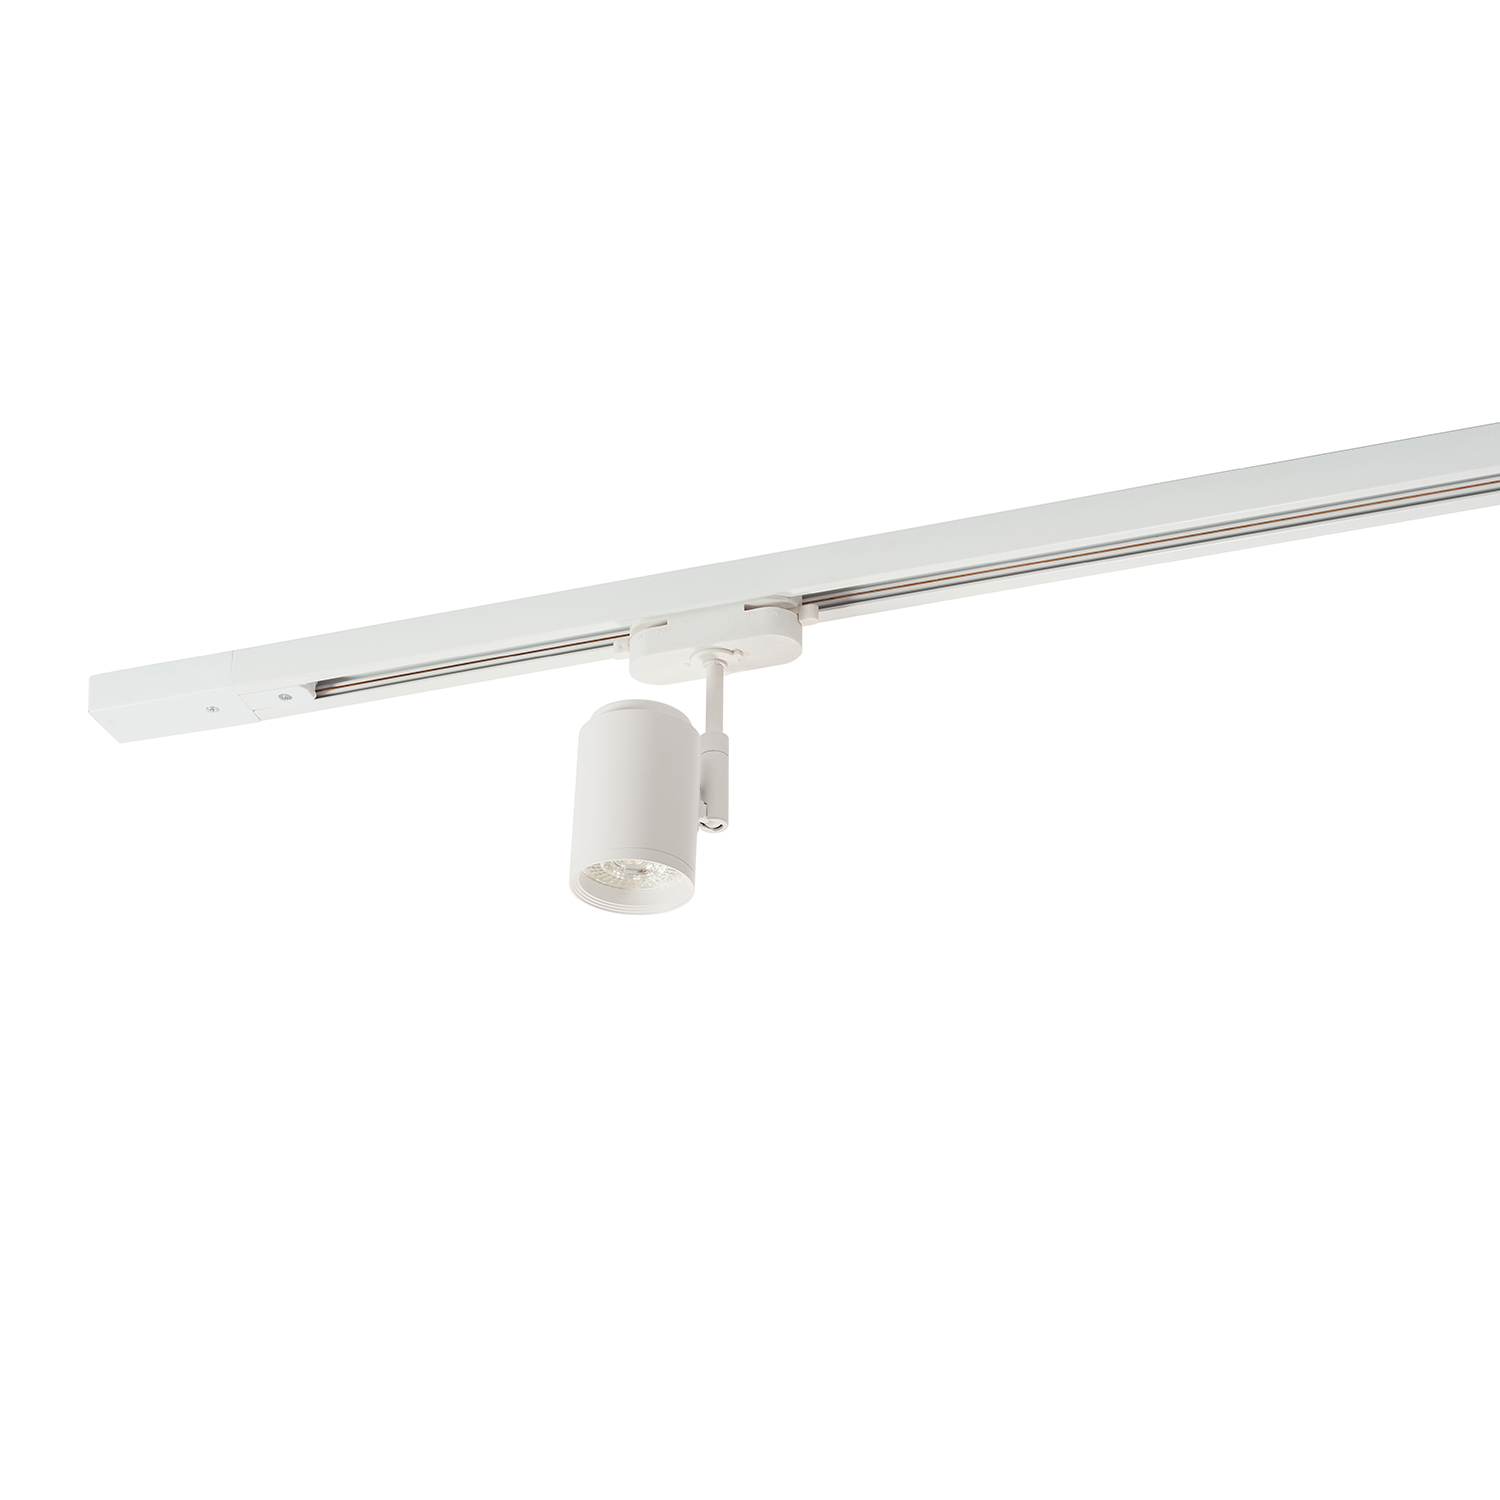 DK6001-WH Трековый светильник IP 20, 50 Вт, GU10, белый, алюминий